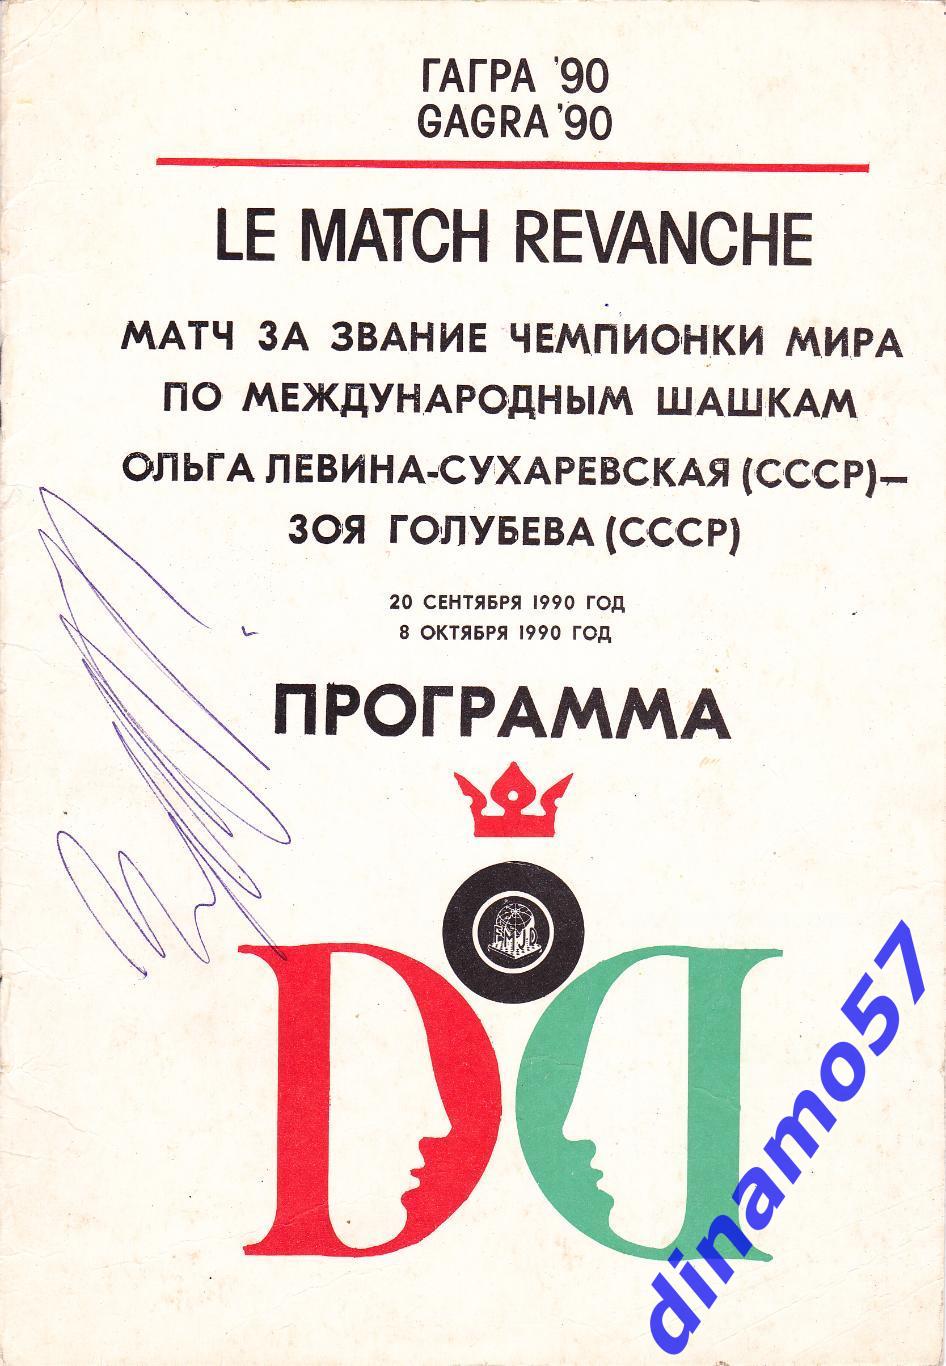 Шашки - Матч за звание чемпионки мира - 1990 автограф